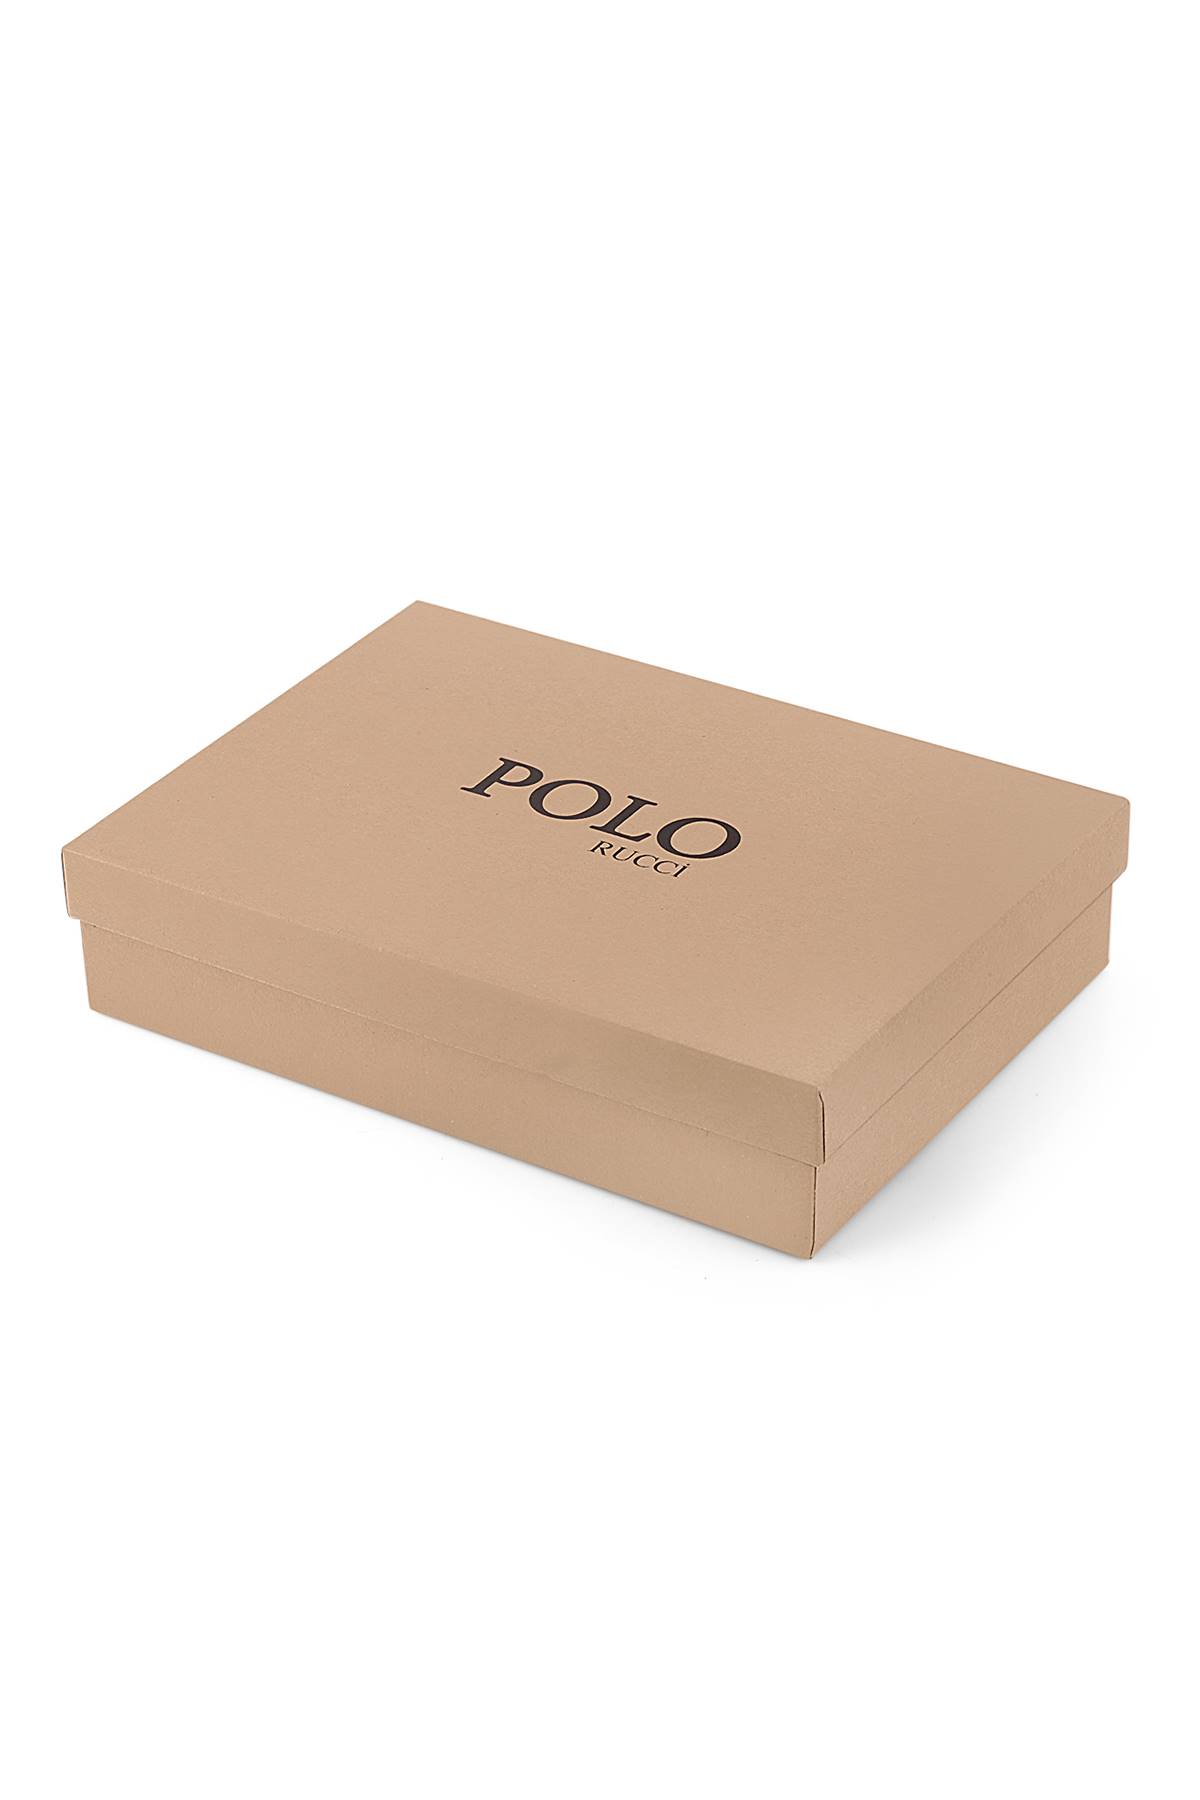 Polo Rucci Dijital Erkek Kol Saati Cüzdan ve Kemer Seti PL-0576E1